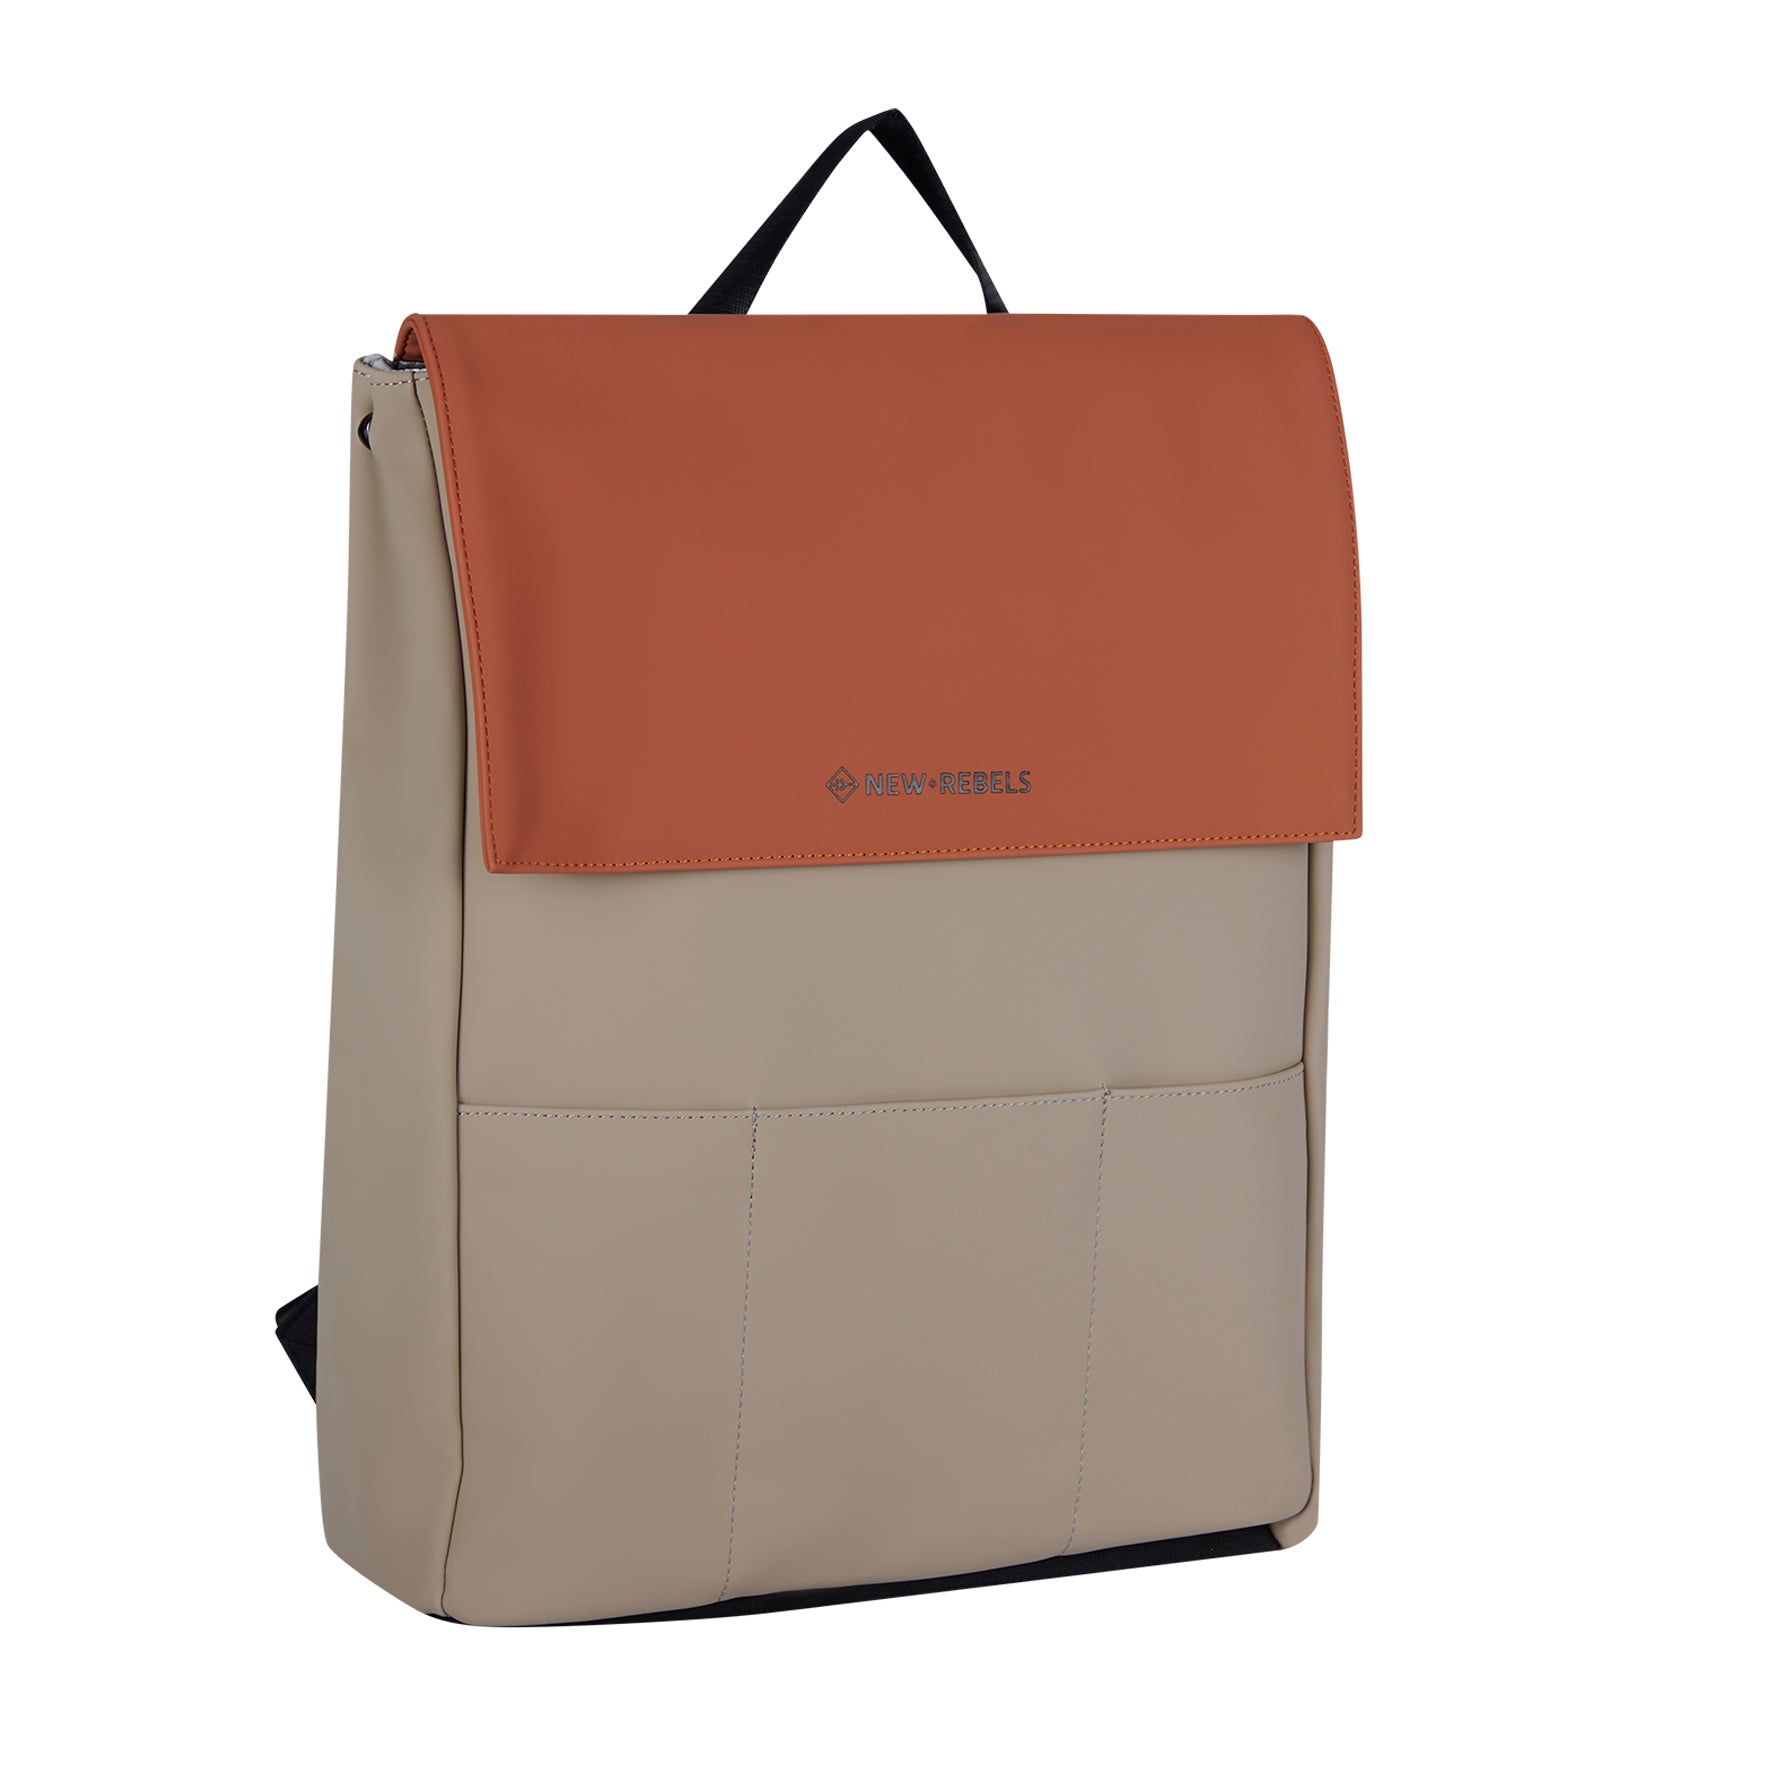 Backpack 'Lincoln' orange/beige 17L